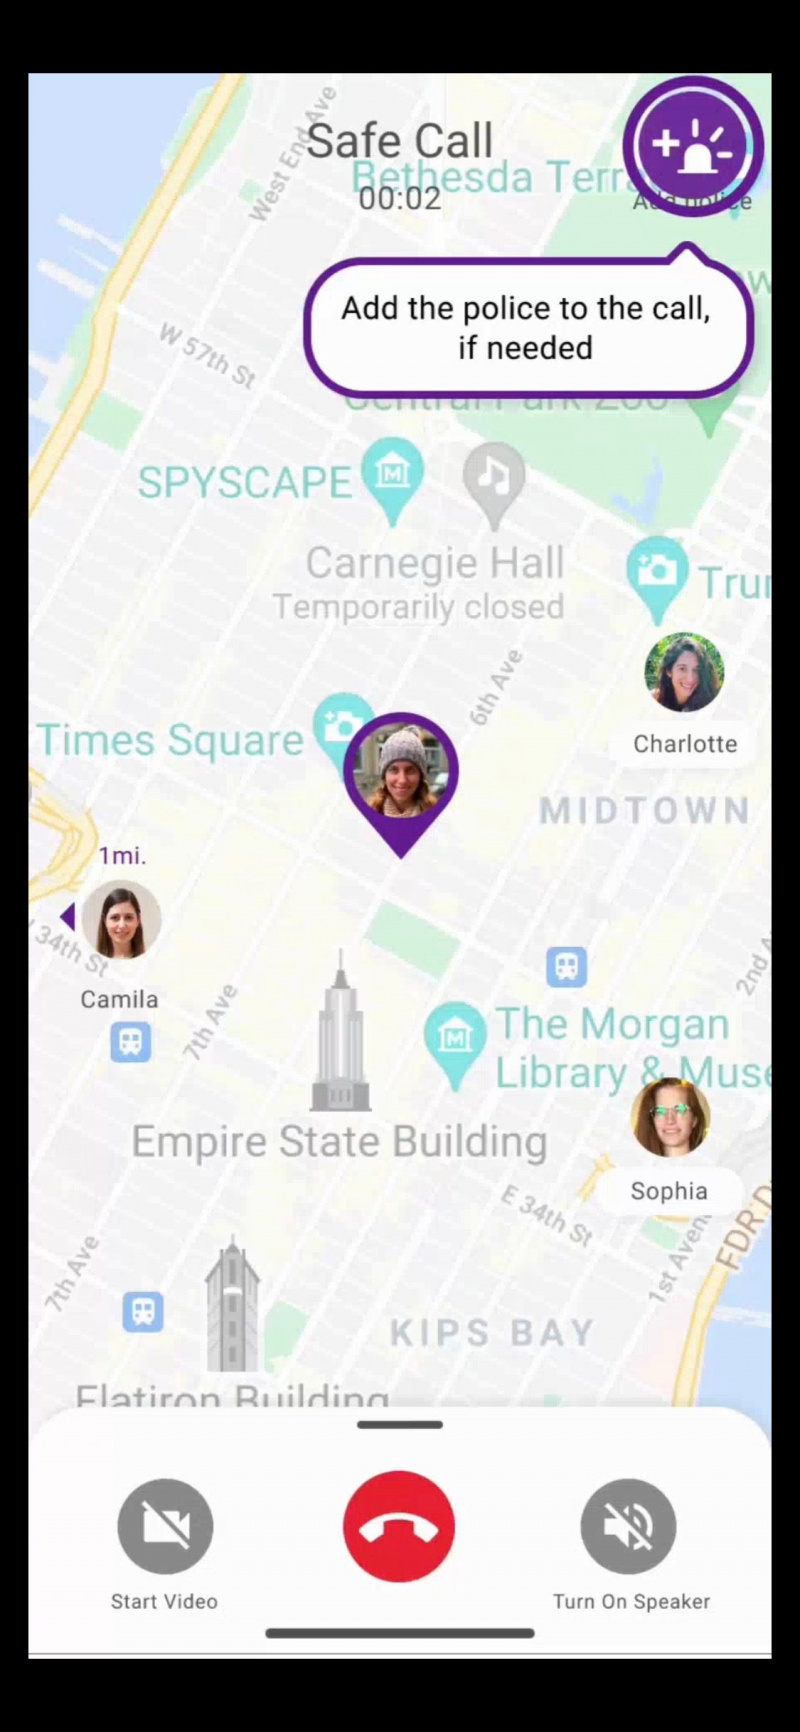   Snímka obrazovky aplikácie SafeUP s možnosťou pridať políciu do bezpečného hovoru